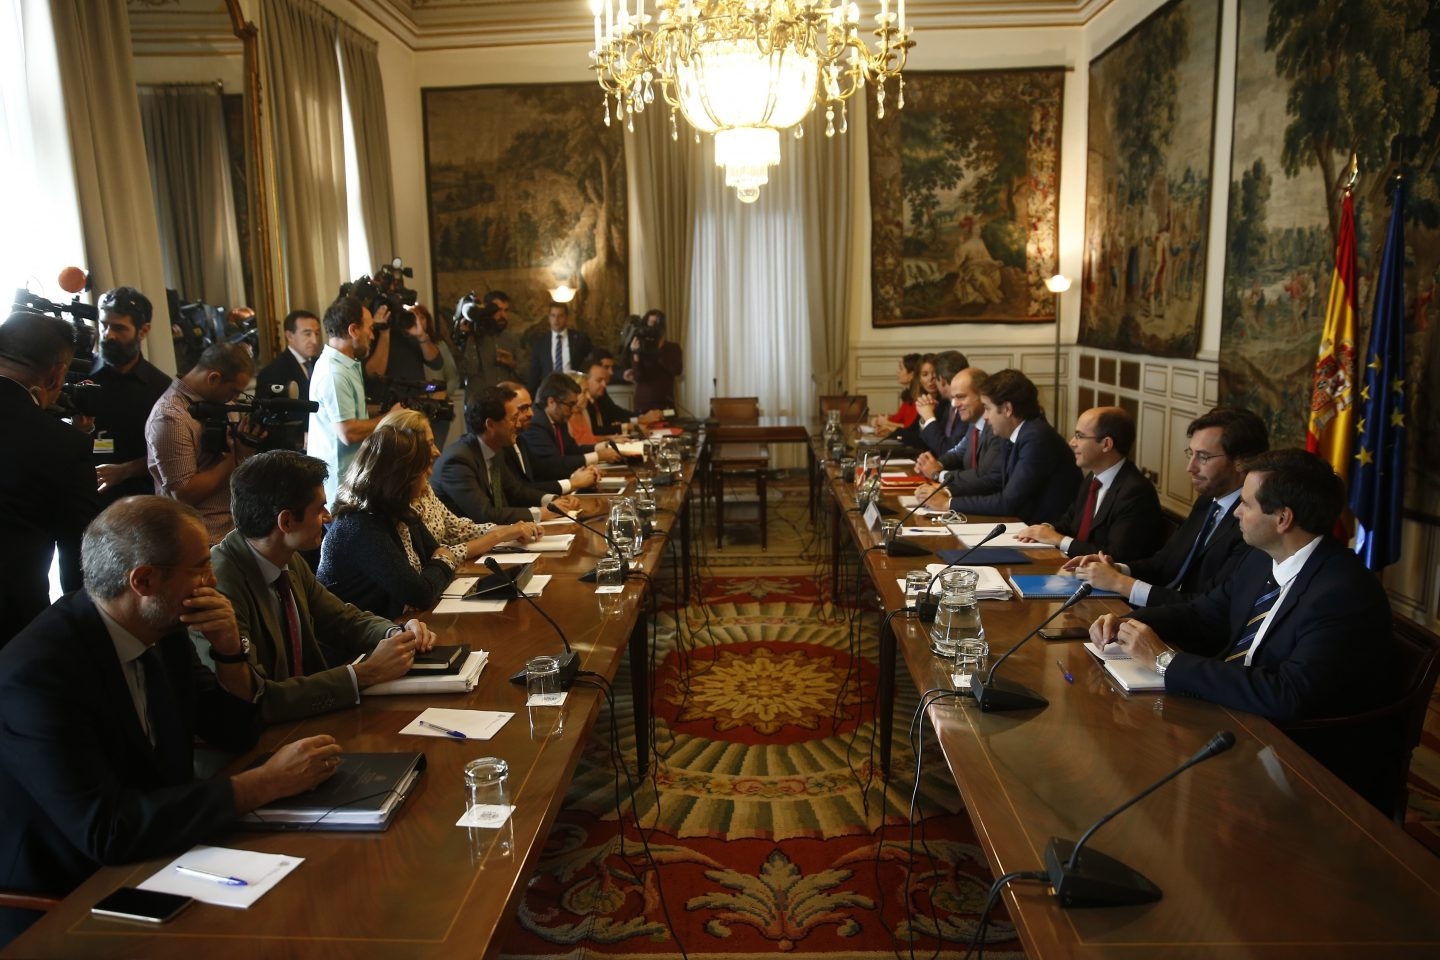 Roberto Bermúdez de Castro preside la reunión con los subsecretarios tras activar el 155 para intervenir Cataluña.